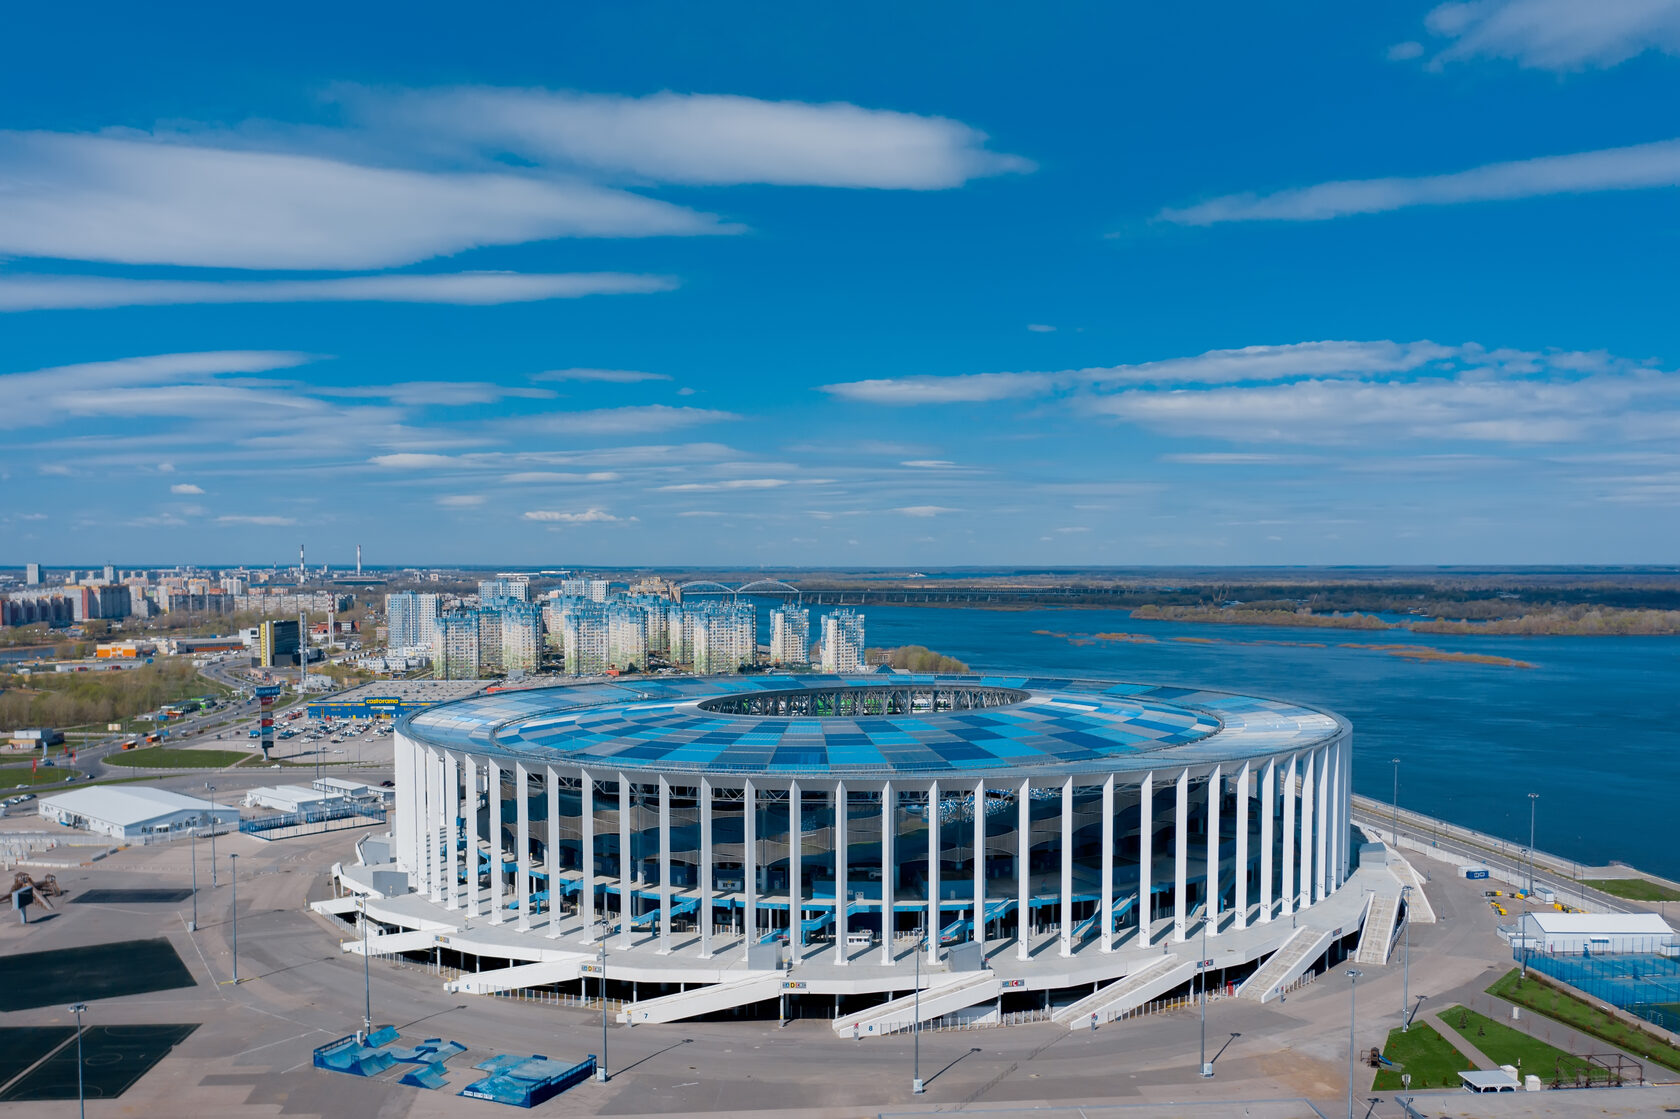 Самые масштабные события проходят на стадионе, построенном к Чемпионату мира по футболу FIFA-2018